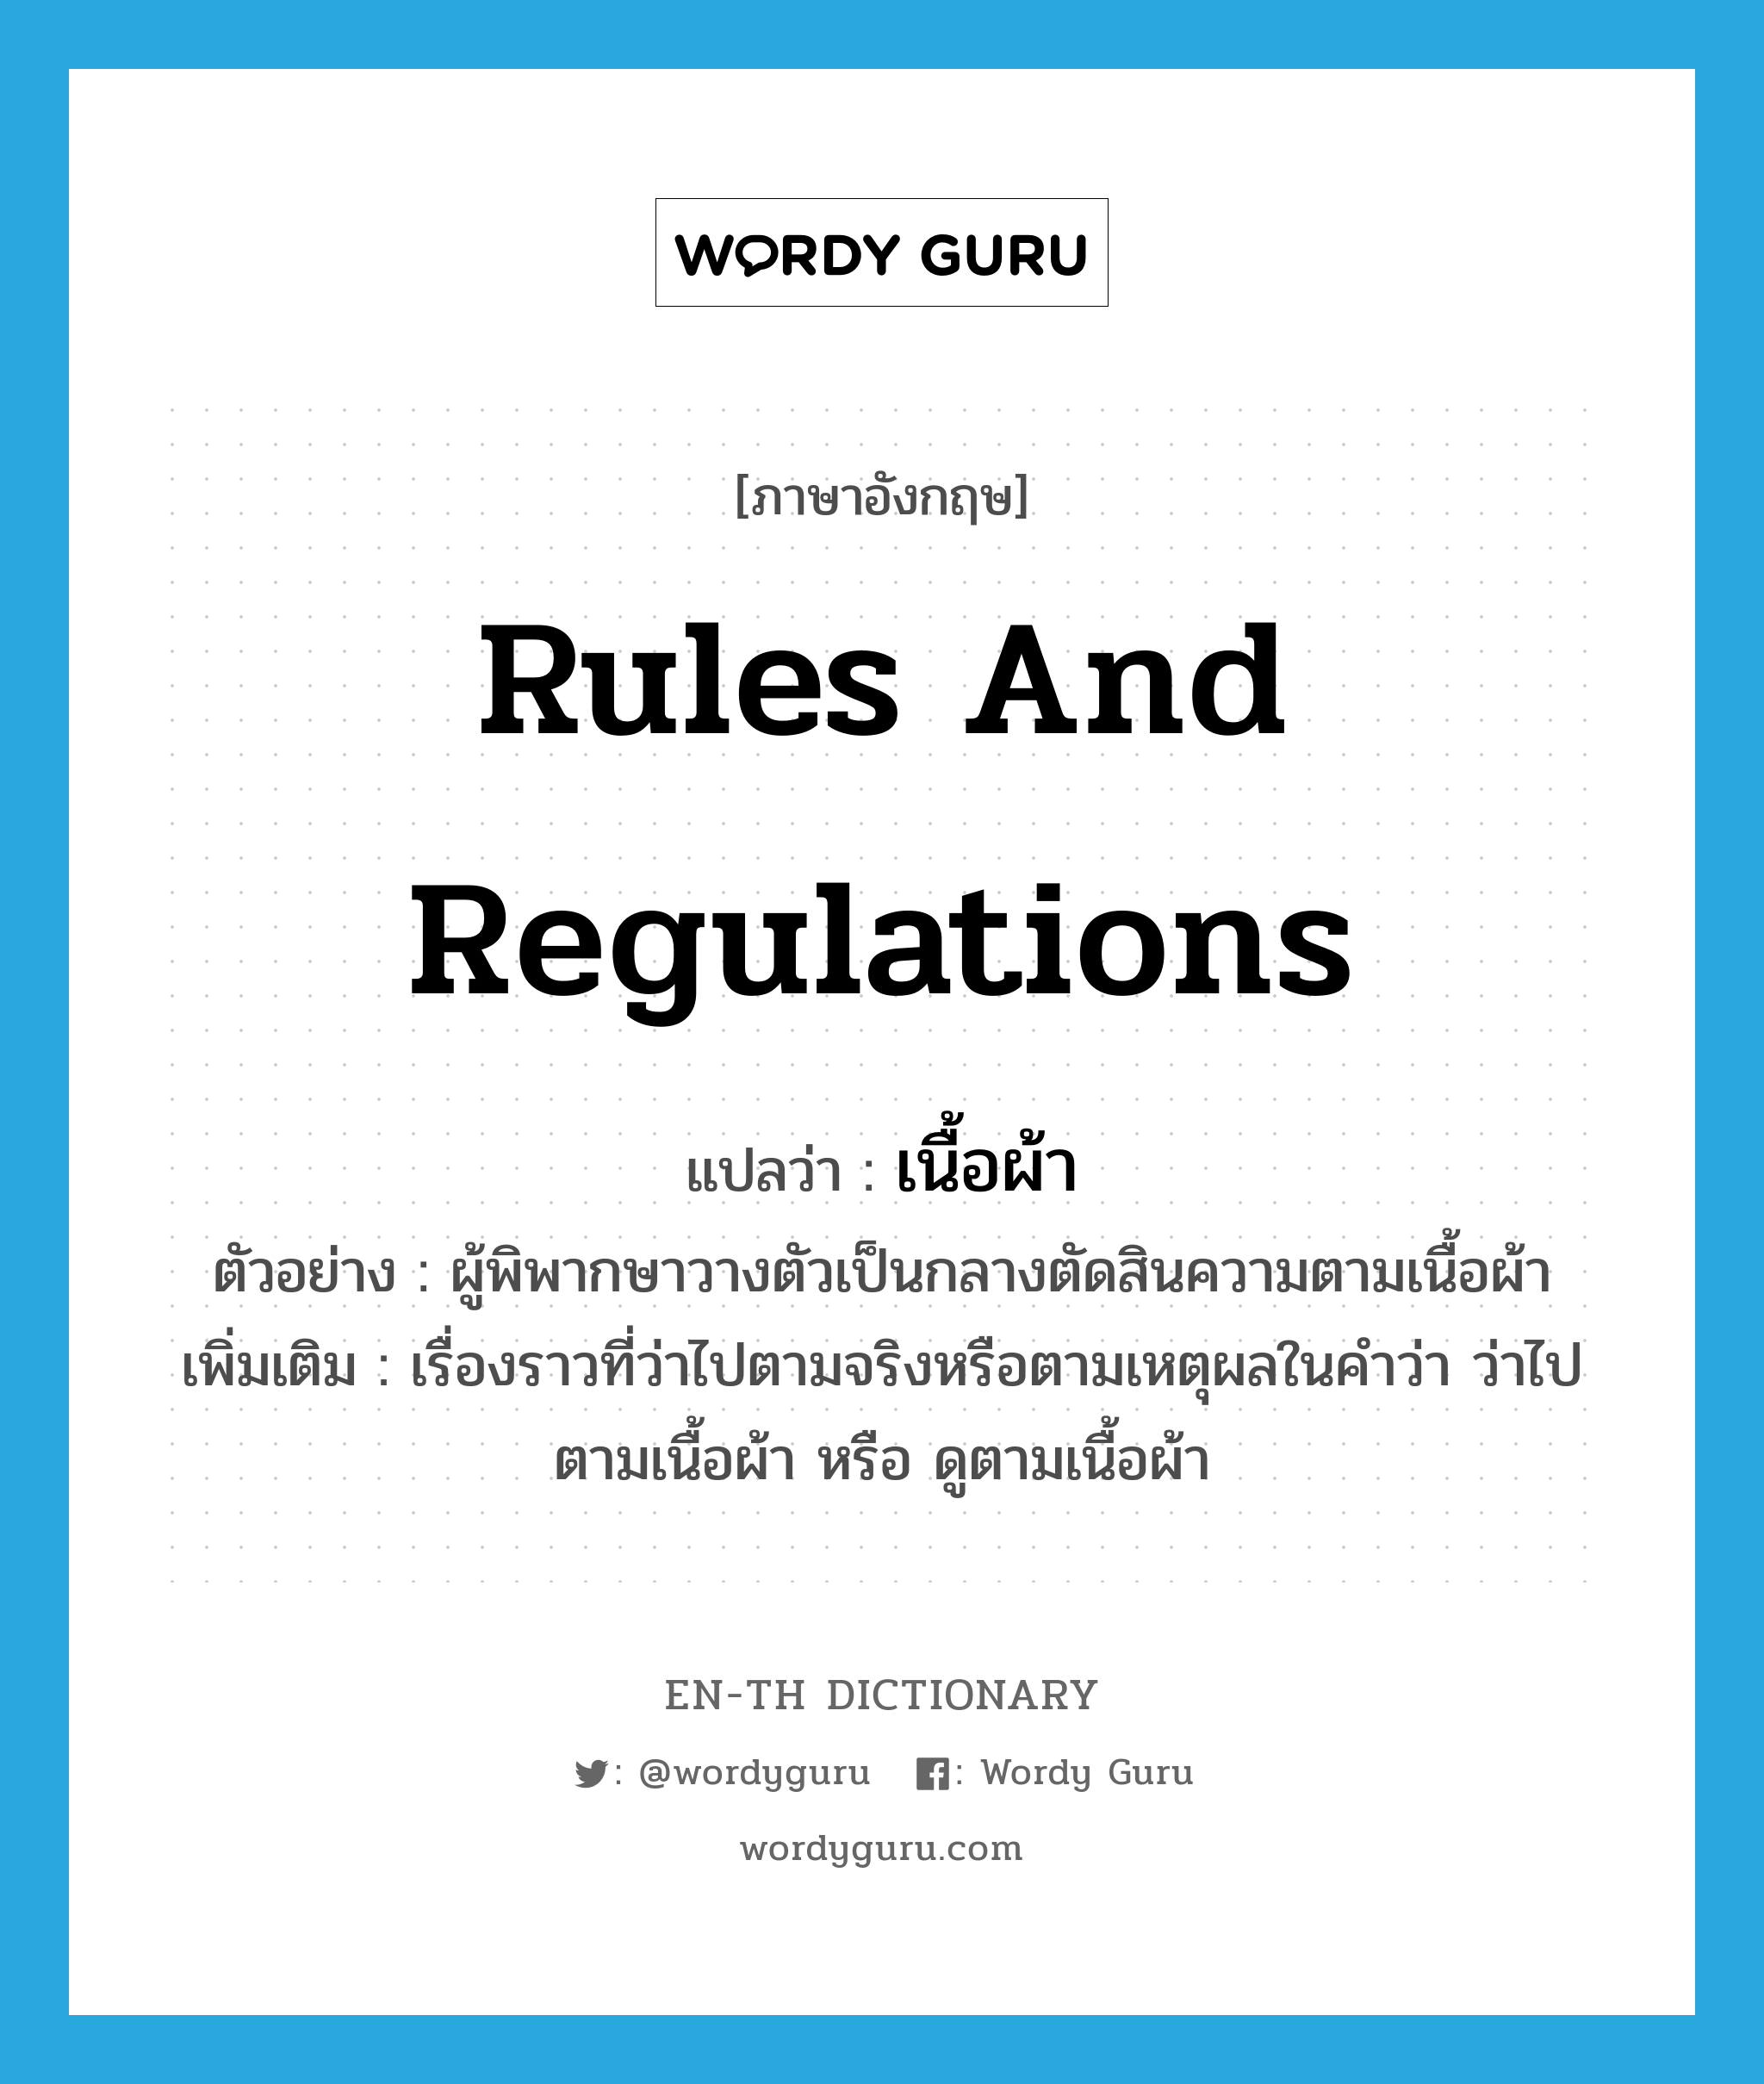 rules and regulations แปลว่า?, คำศัพท์ภาษาอังกฤษ rules and regulations แปลว่า เนื้อผ้า ประเภท N ตัวอย่าง ผู้พิพากษาวางตัวเป็นกลางตัดสินความตามเนื้อผ้า เพิ่มเติม เรื่องราวที่ว่าไปตามจริงหรือตามเหตุผลในคำว่า ว่าไปตามเนื้อผ้า หรือ ดูตามเนื้อผ้า หมวด N